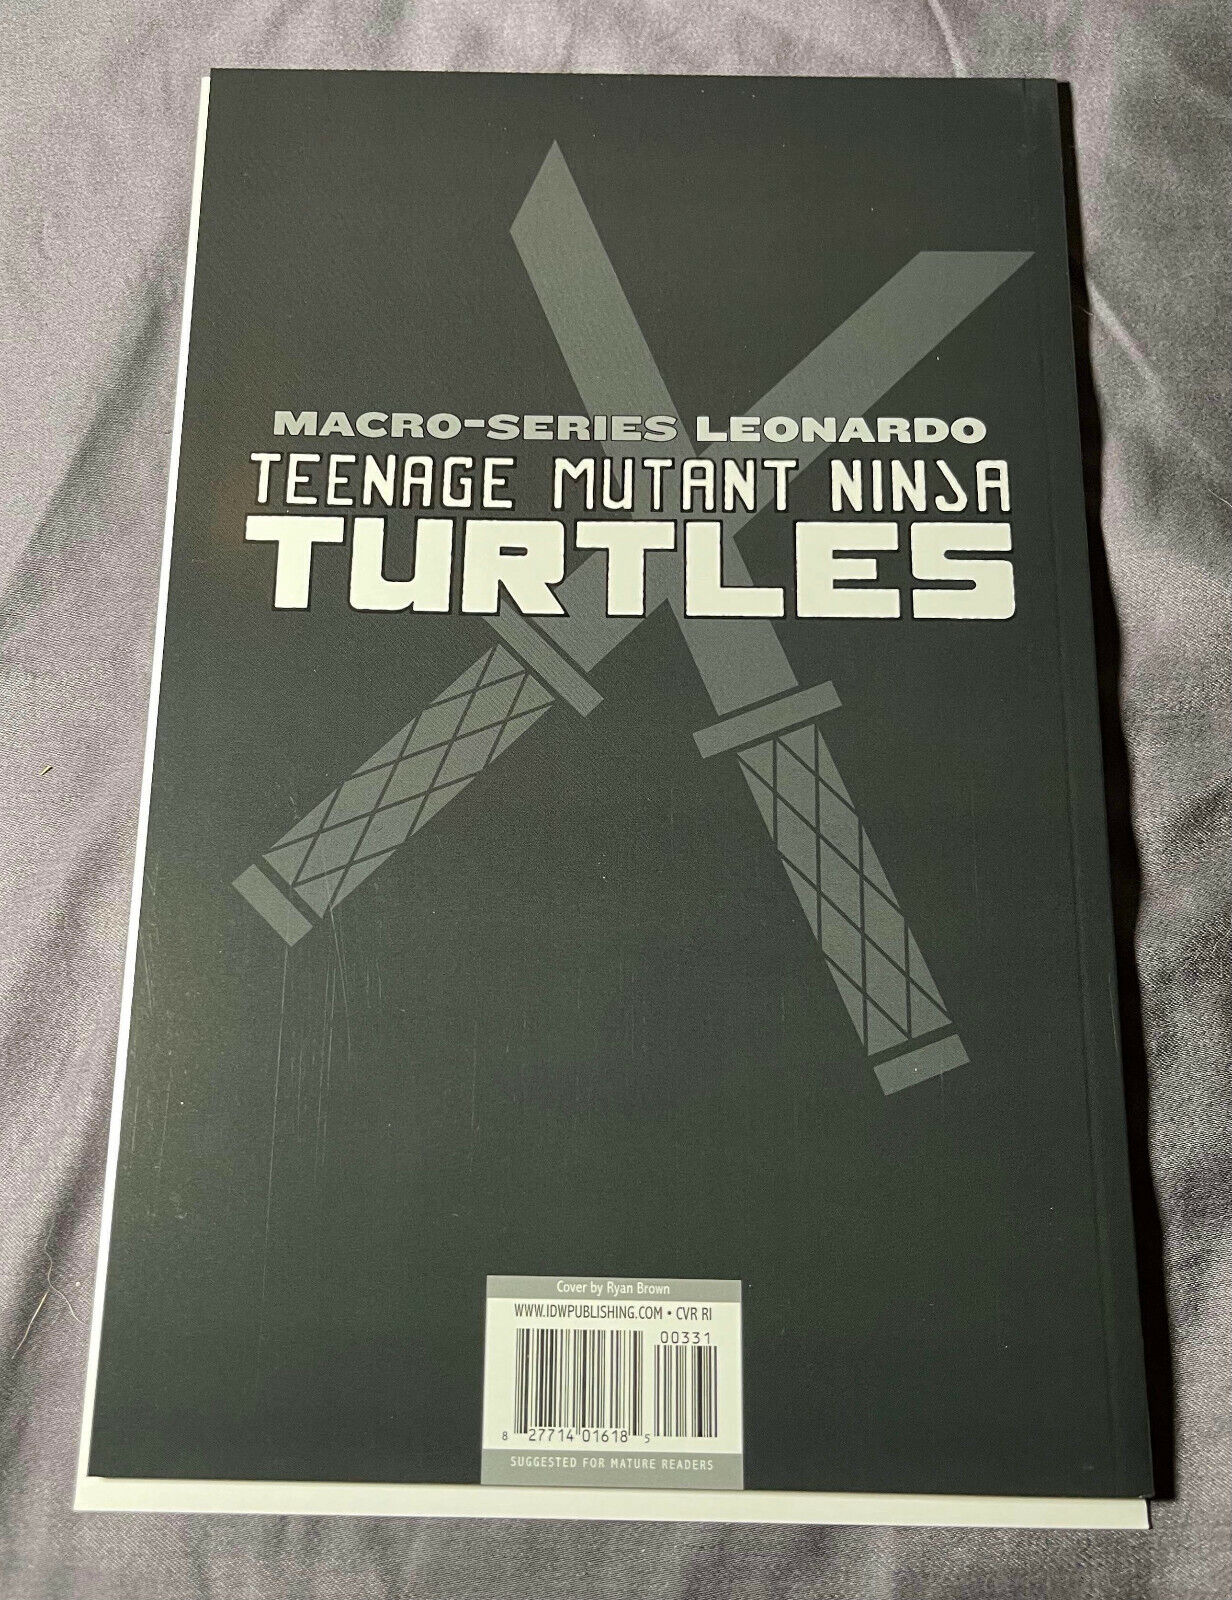 Teenage Mutant Ninja Turtles #3  TMNT RARE! LEONARDO MACRO SERIES RI Variant NM